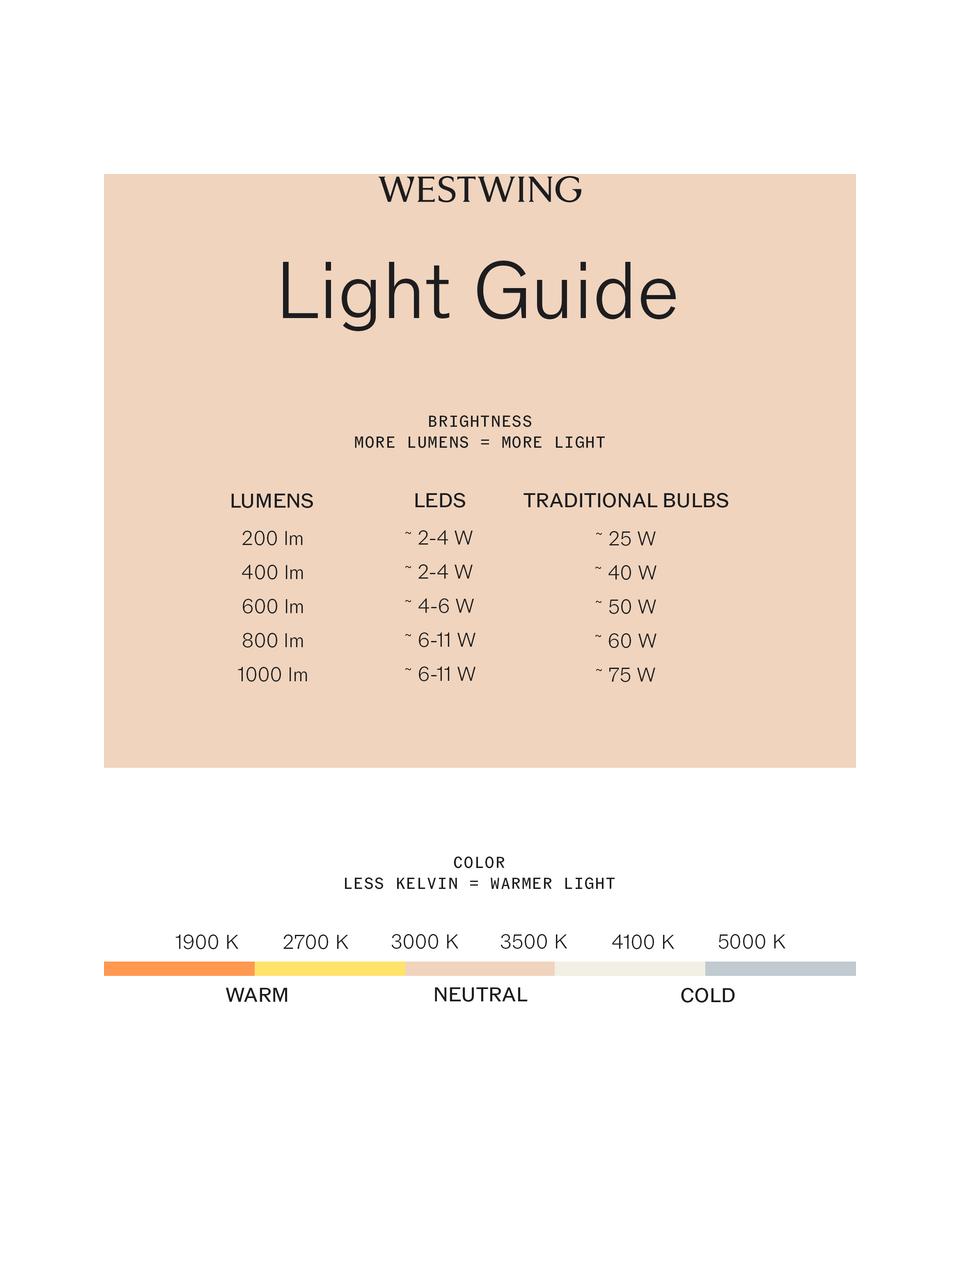 Kleine mobile LED-Aussentischlampe Ombrellino, dimmbar, Weiss, Ø 16 x H 23 cm